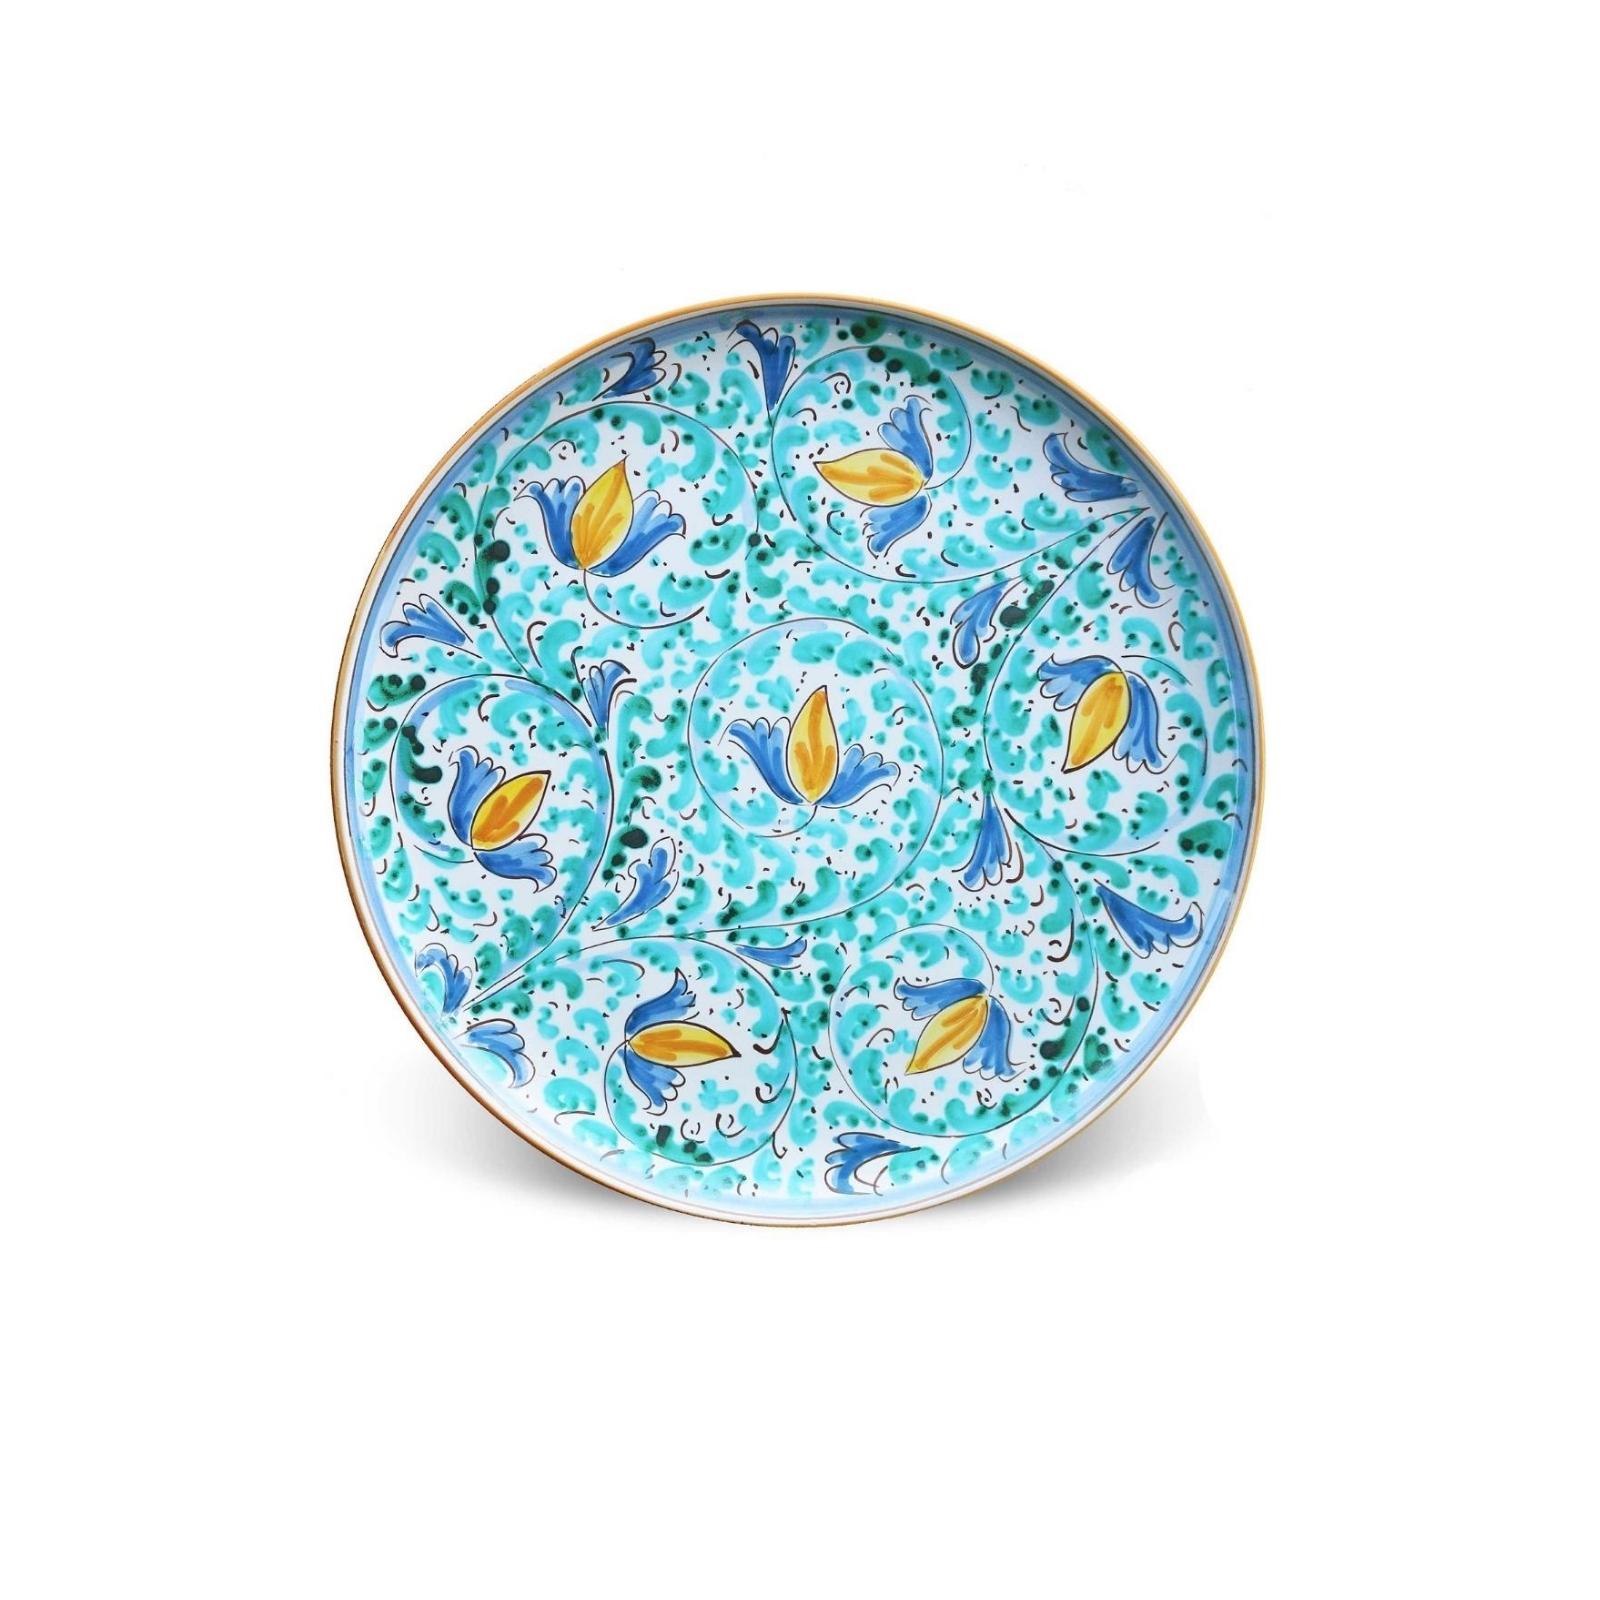 Decorated caltagirone ceramic serving plate – Capopassero